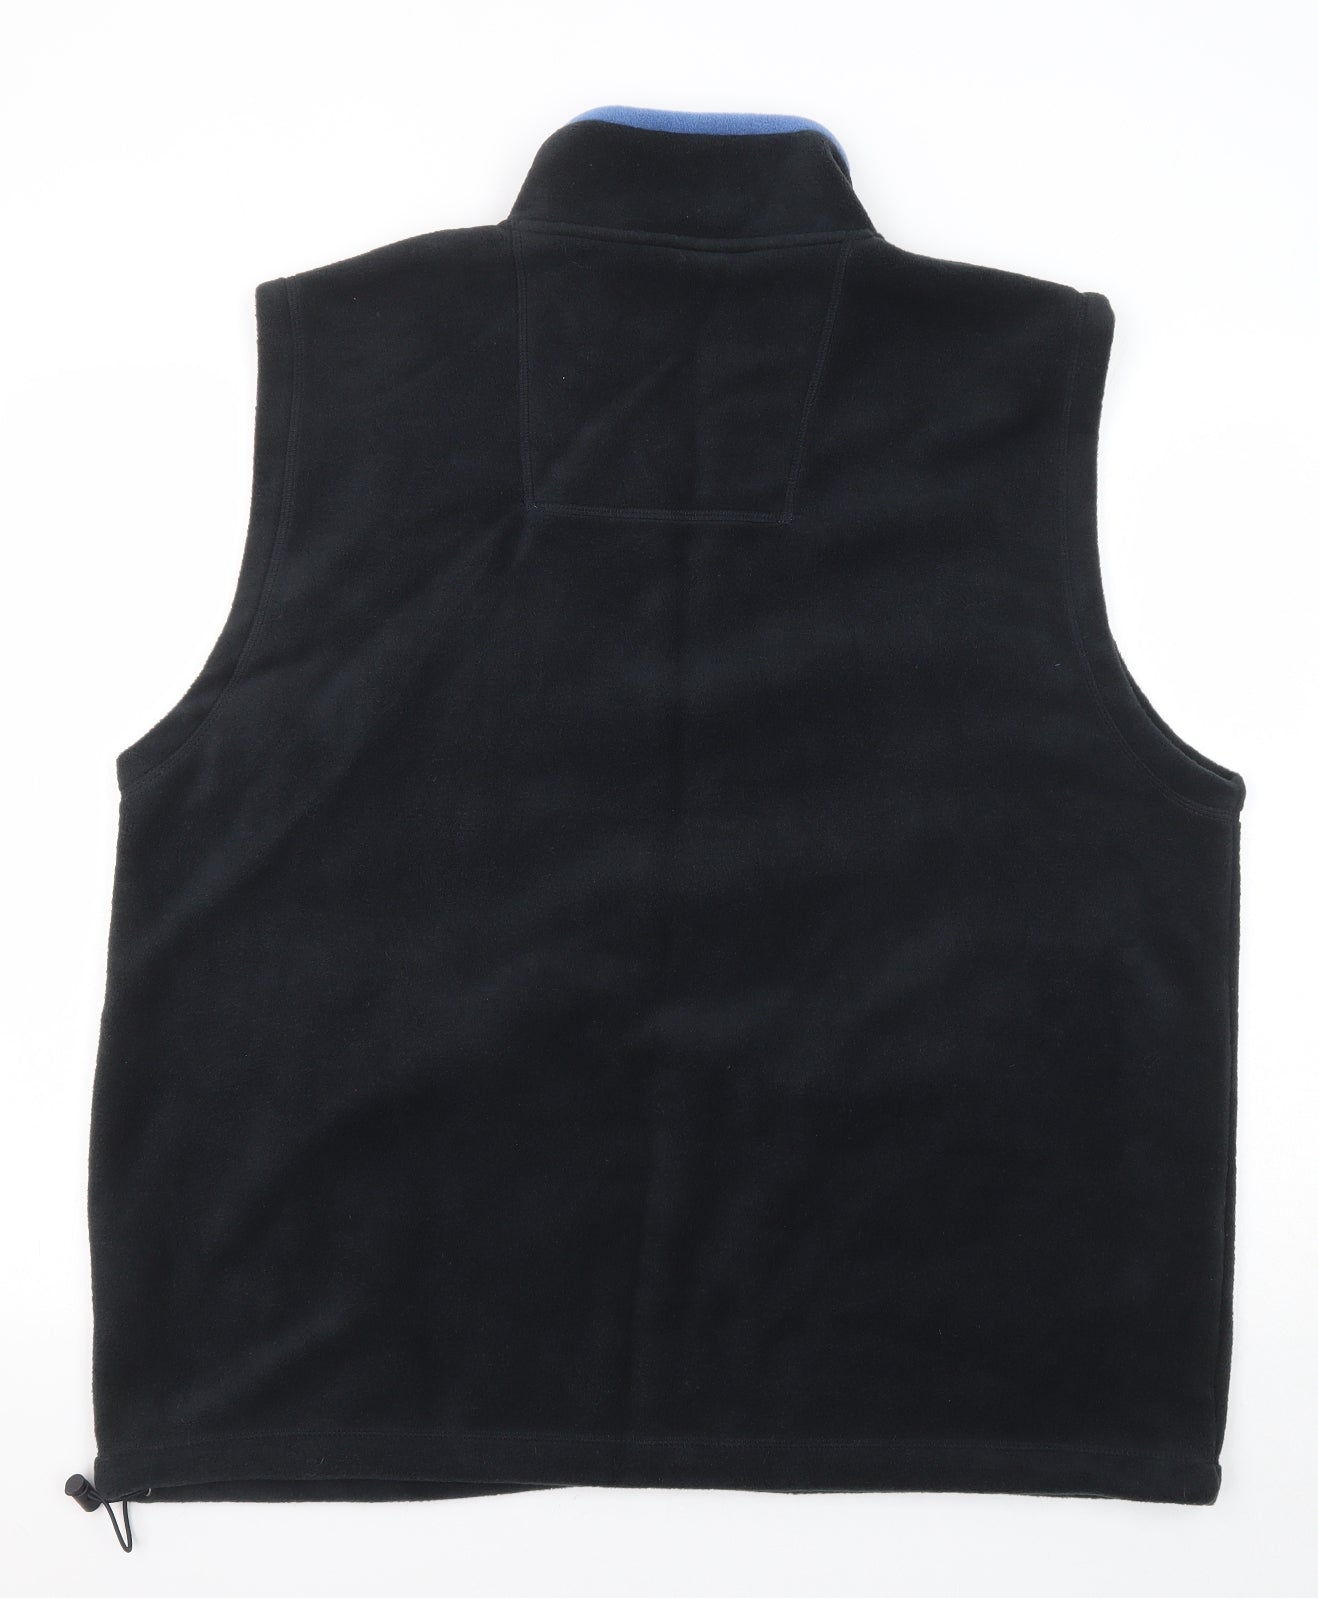 EWM Mens Black Gilet Jacket Size XL Zip